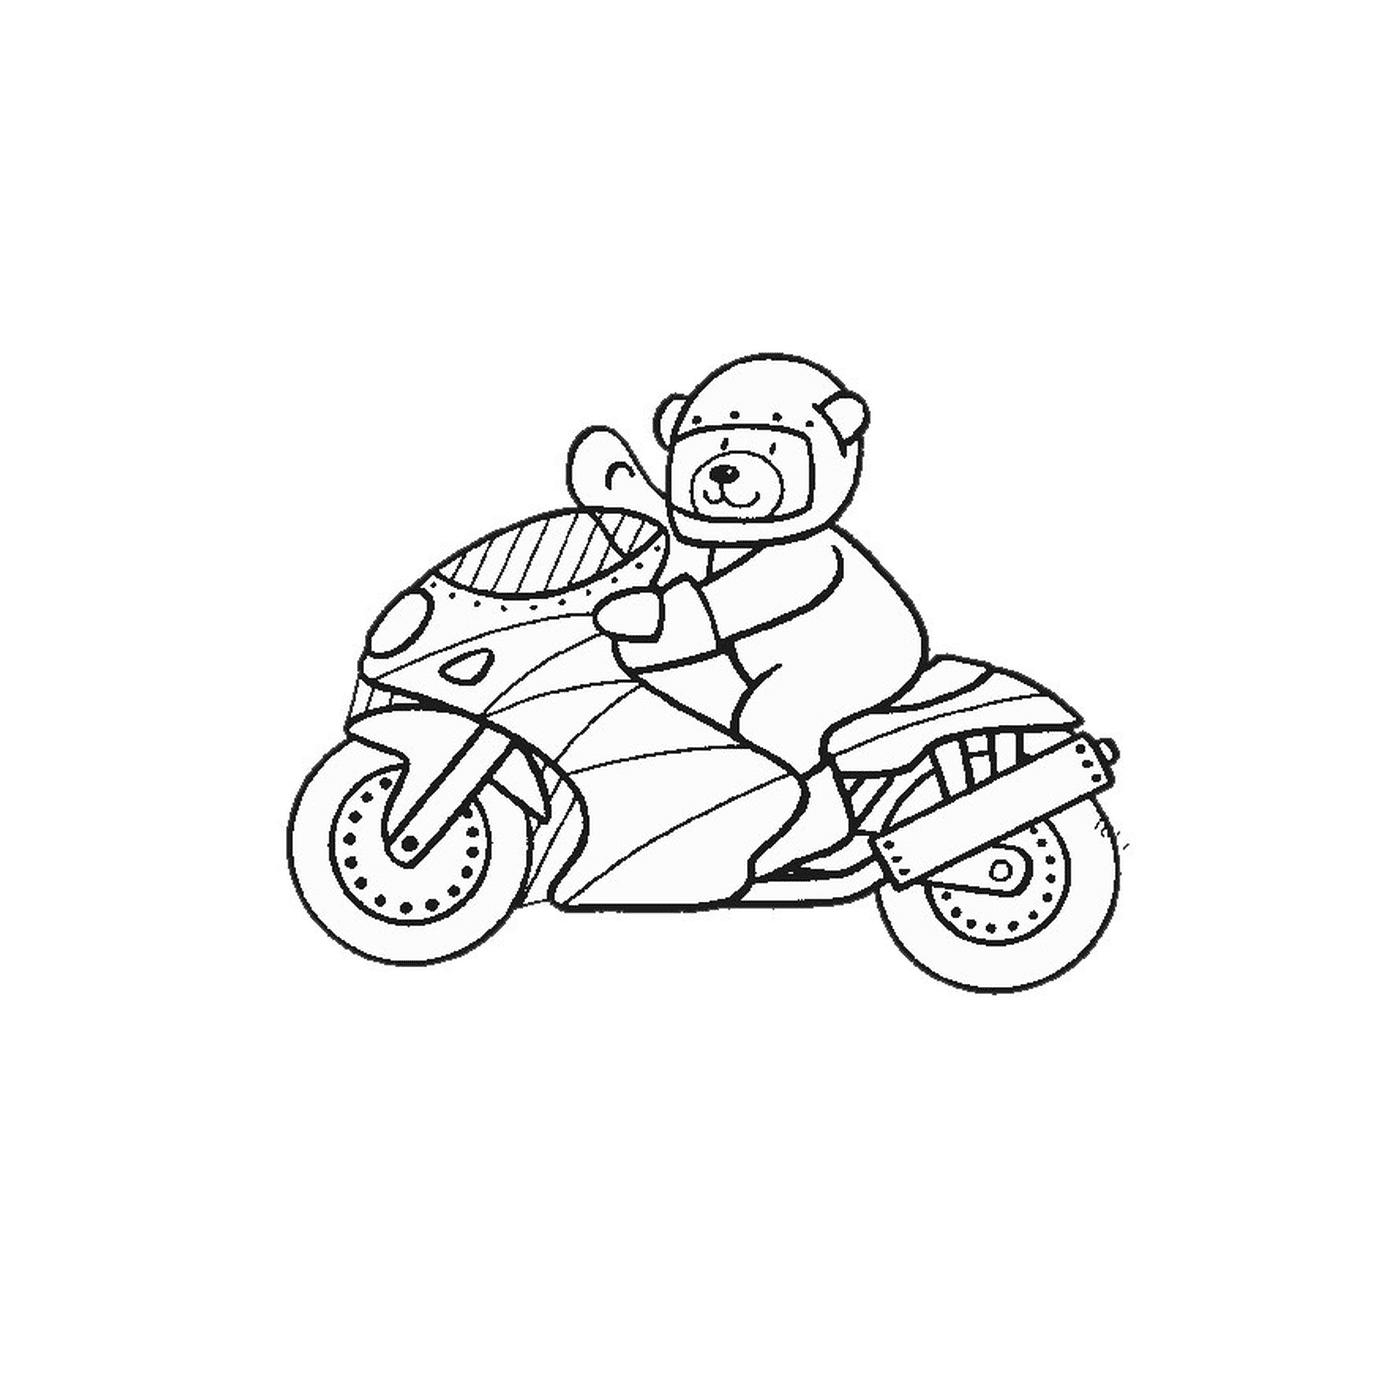  Bär fahren Motorrad 